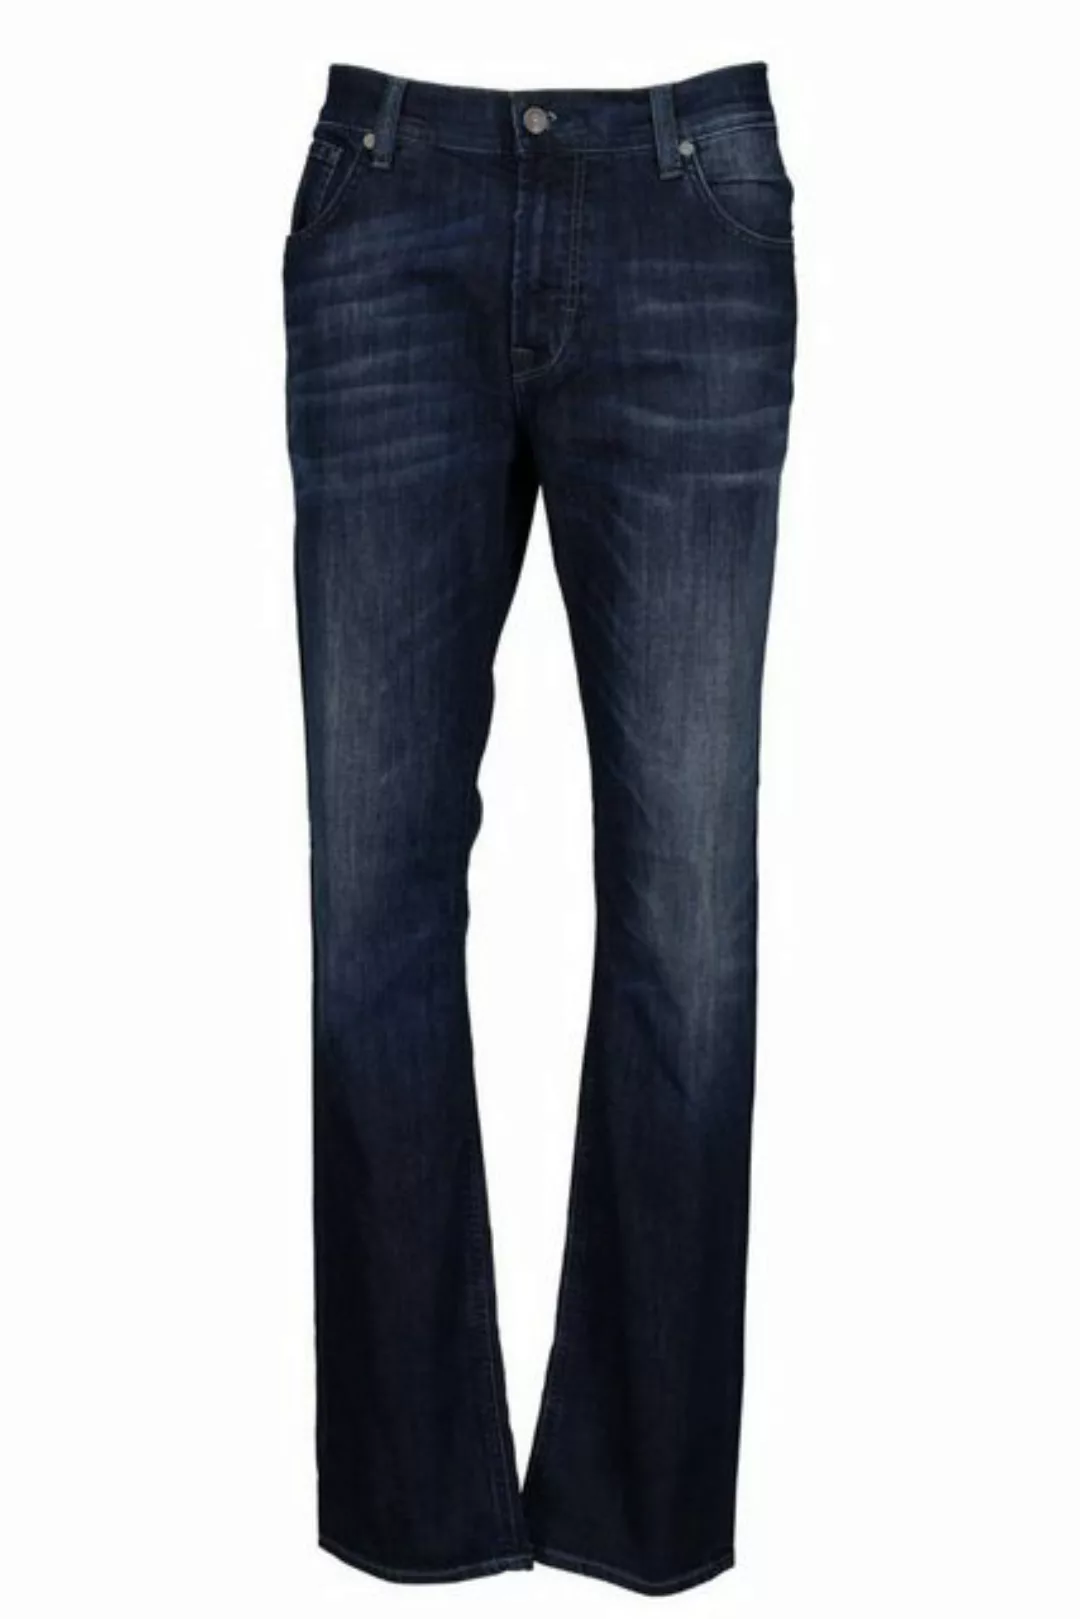 BALDESSARINI Jeans marine B1 16511.1247/6814 günstig online kaufen